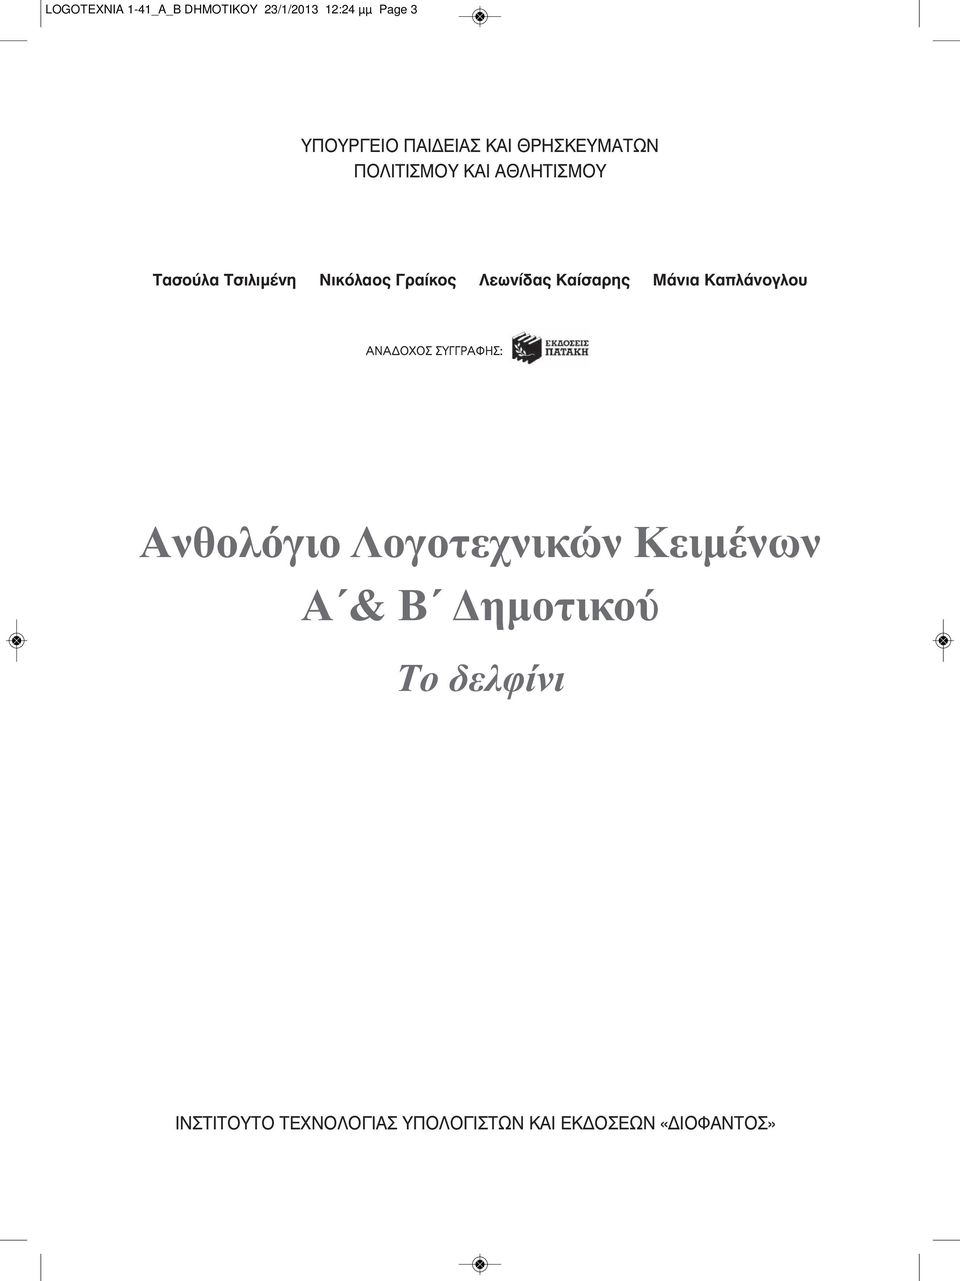 Λεωνίδας Kαίσαρης Mάνια Kαπλάνογλου ANAΔOXOΣ ΣYΓΓPAΦHΣ: Aνθολόγιο Λογοτεχνικών